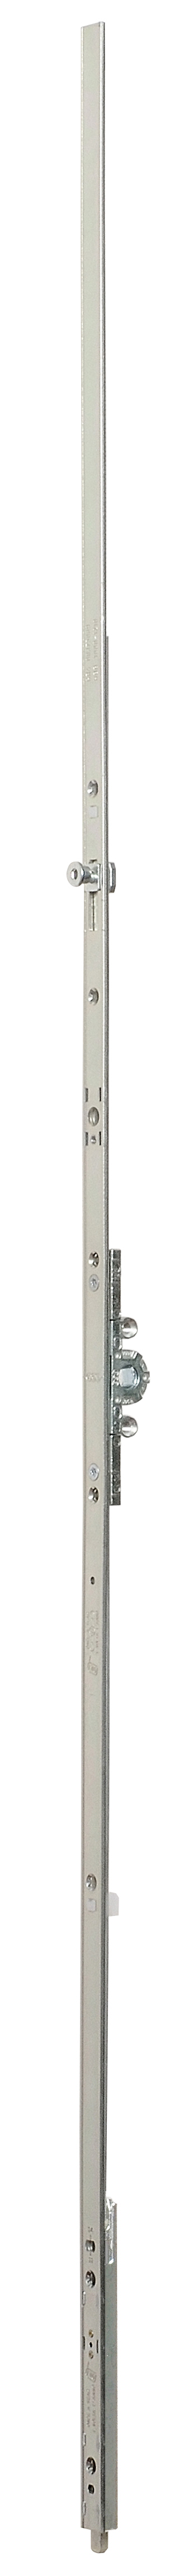 AGB -  Cremonese ARTECH anta a bandiera altezza maniglia fissa con puntale chiusura ad espansione per seconda anta - gr / dim. 03 - entrata 15 - alt. man. 280 - lbb/hbb 800-1010